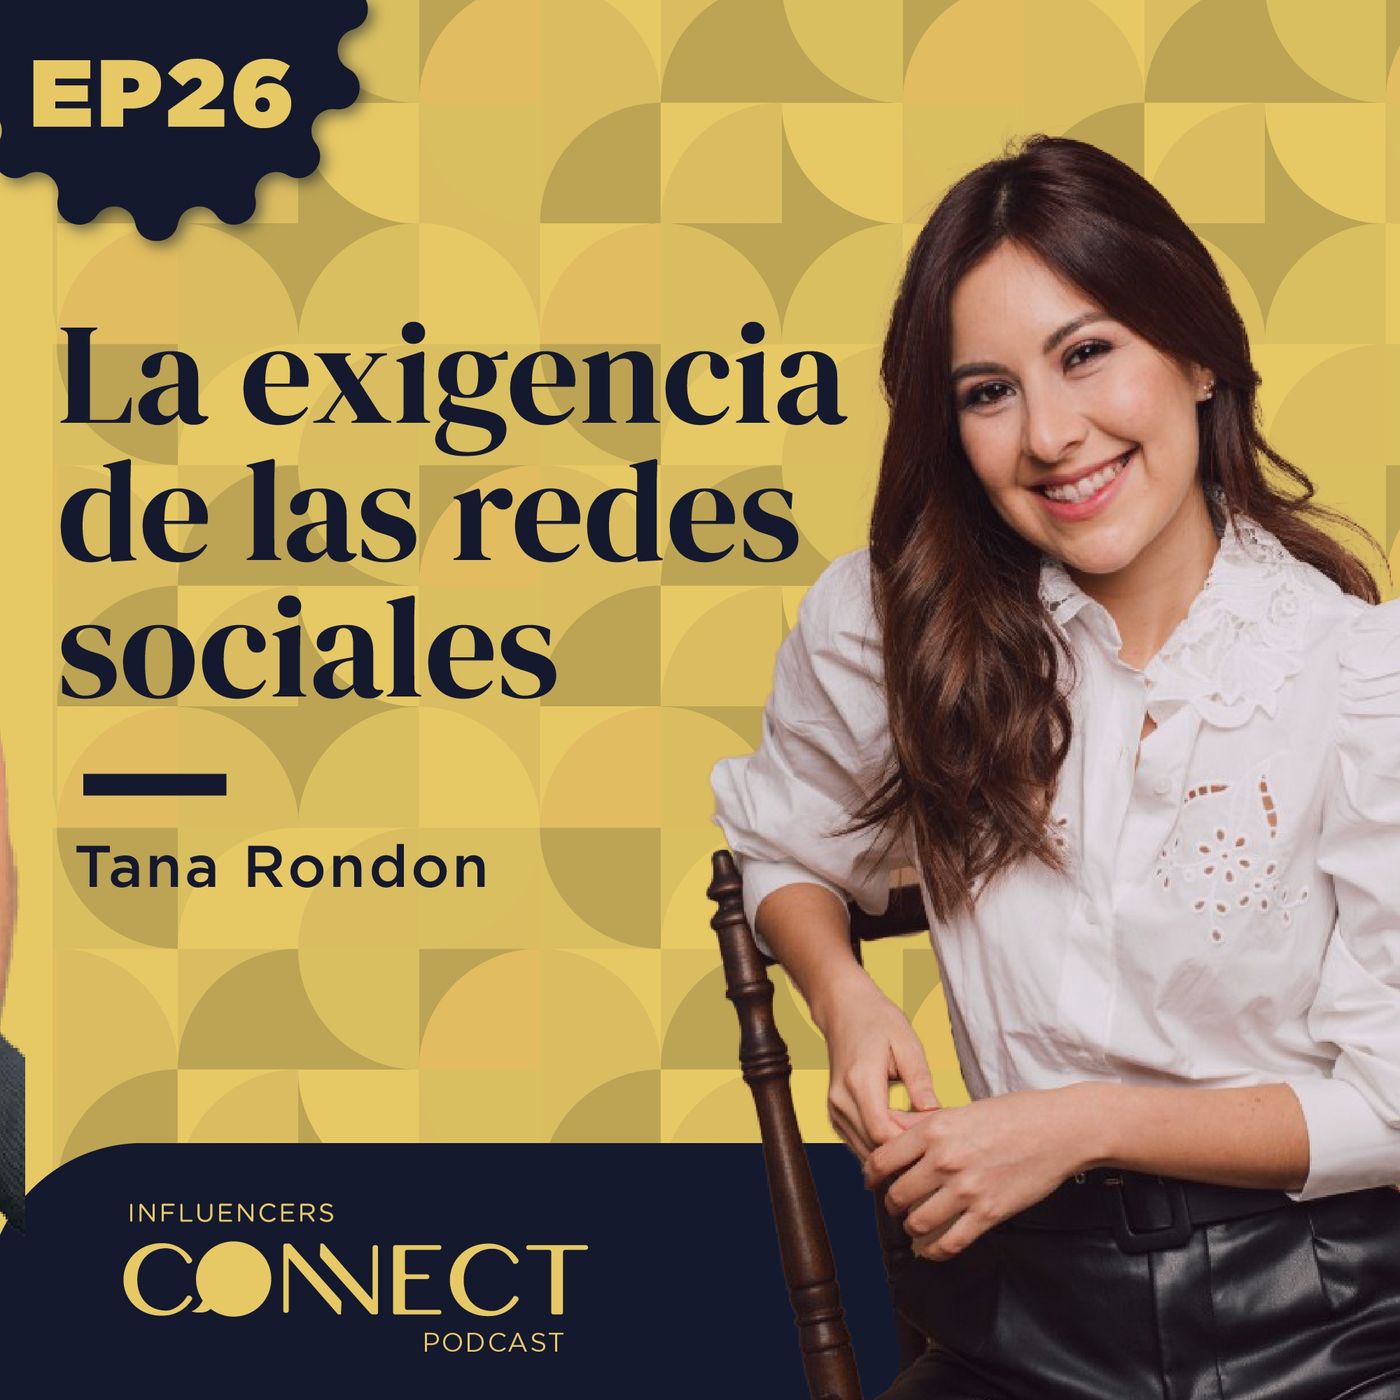 La exigencia de las redes sociales con Tana Rendon